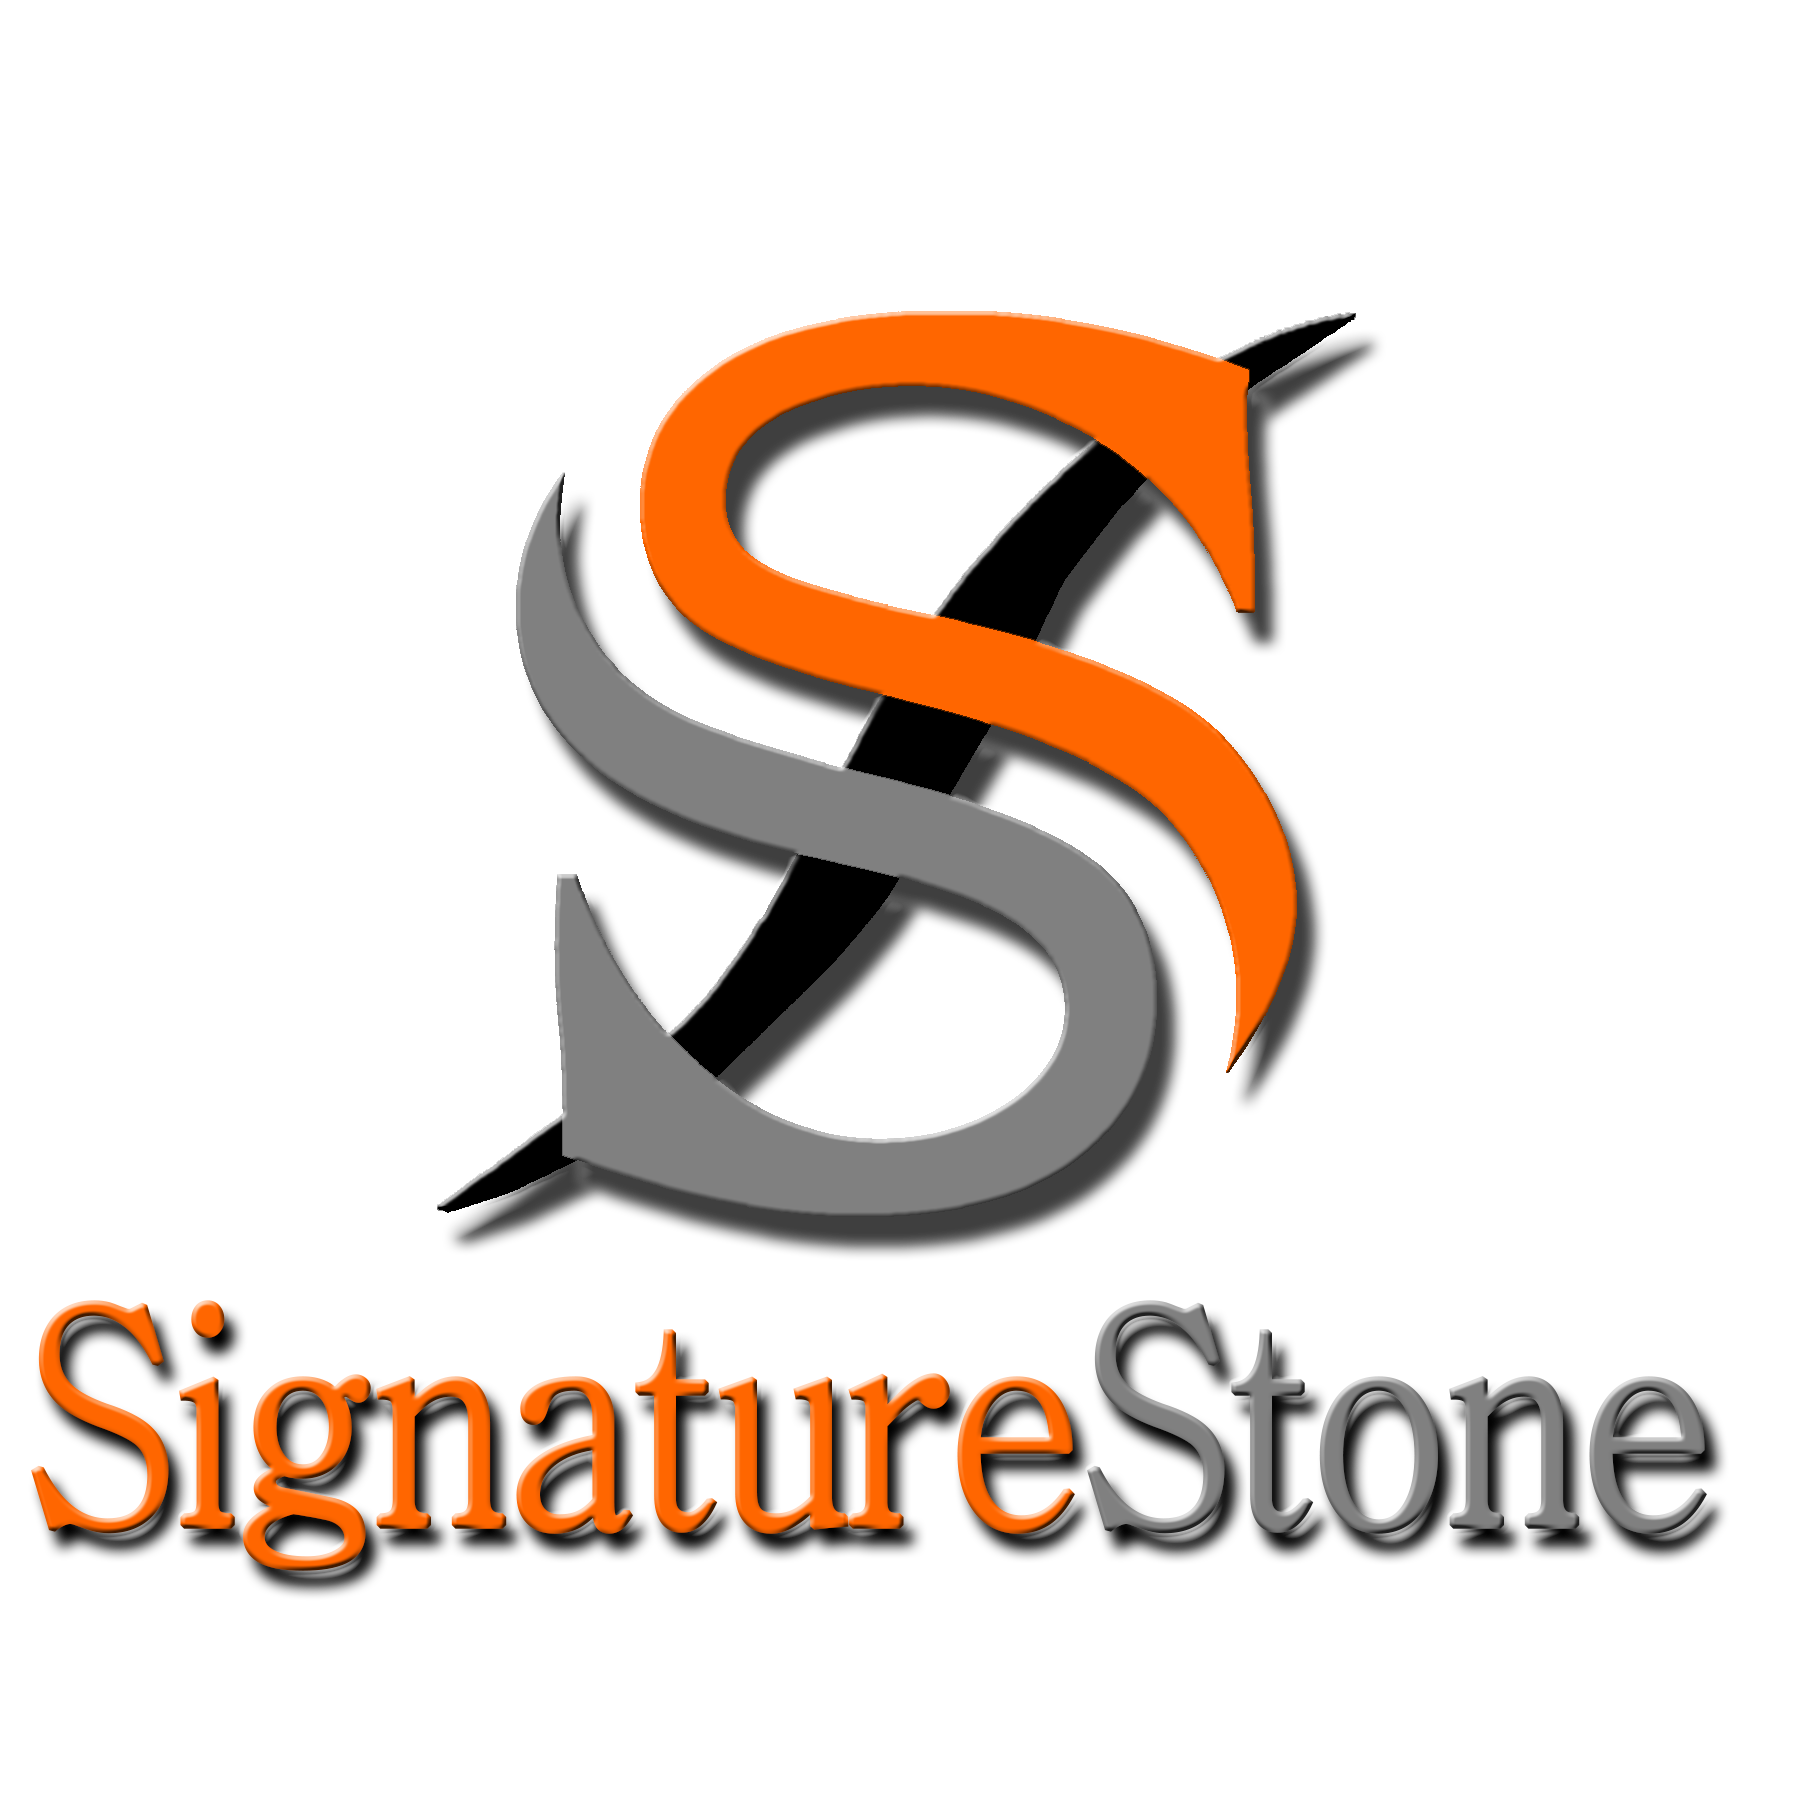 Signature Stone